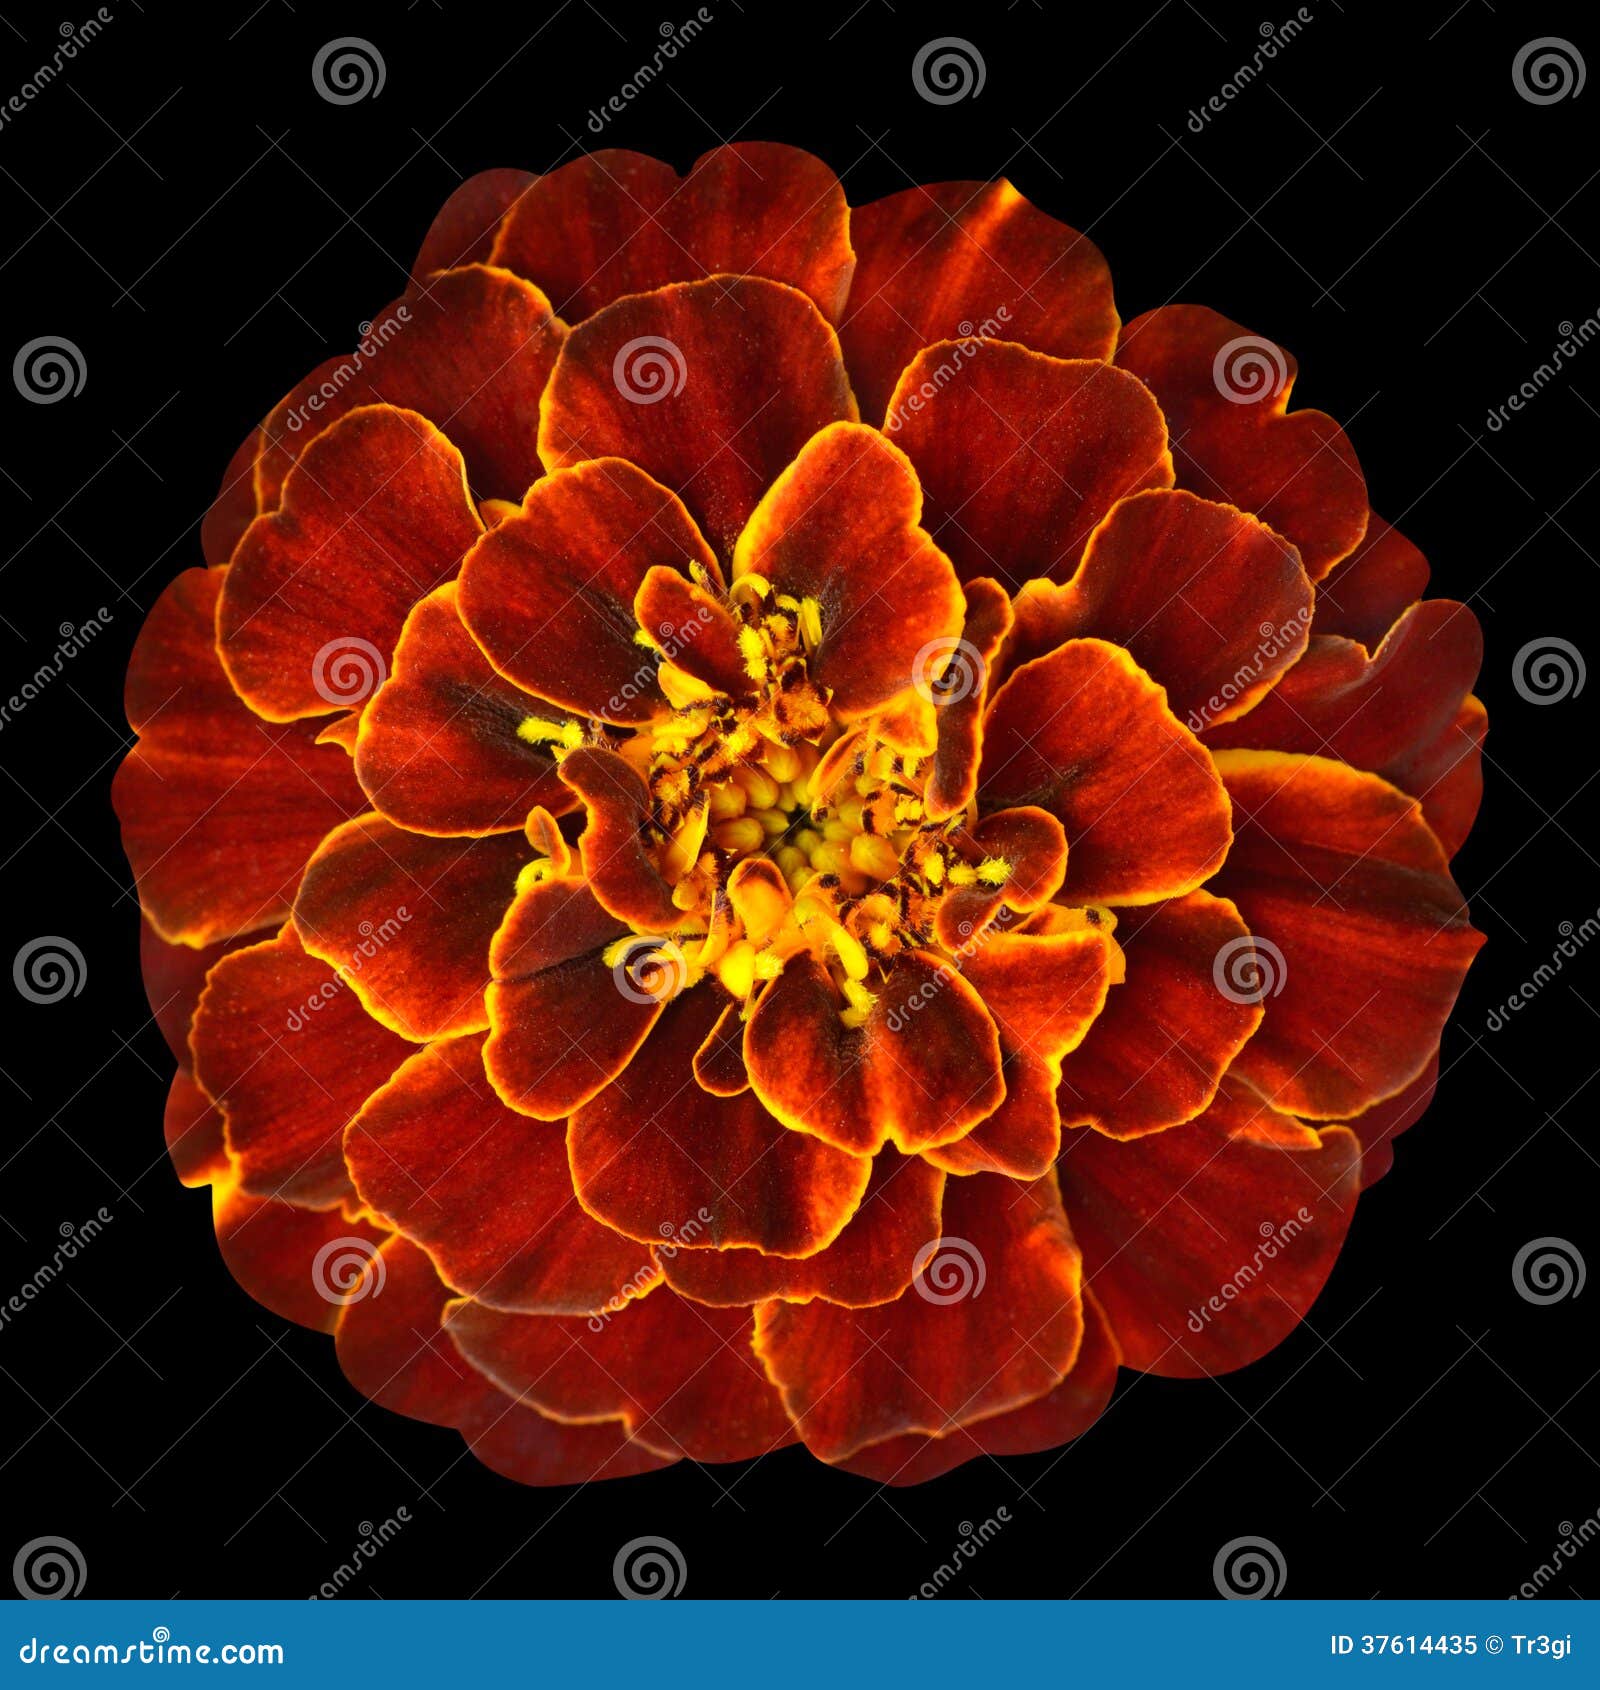 Red Orange Marigold Flower Isolated On Black Background ...